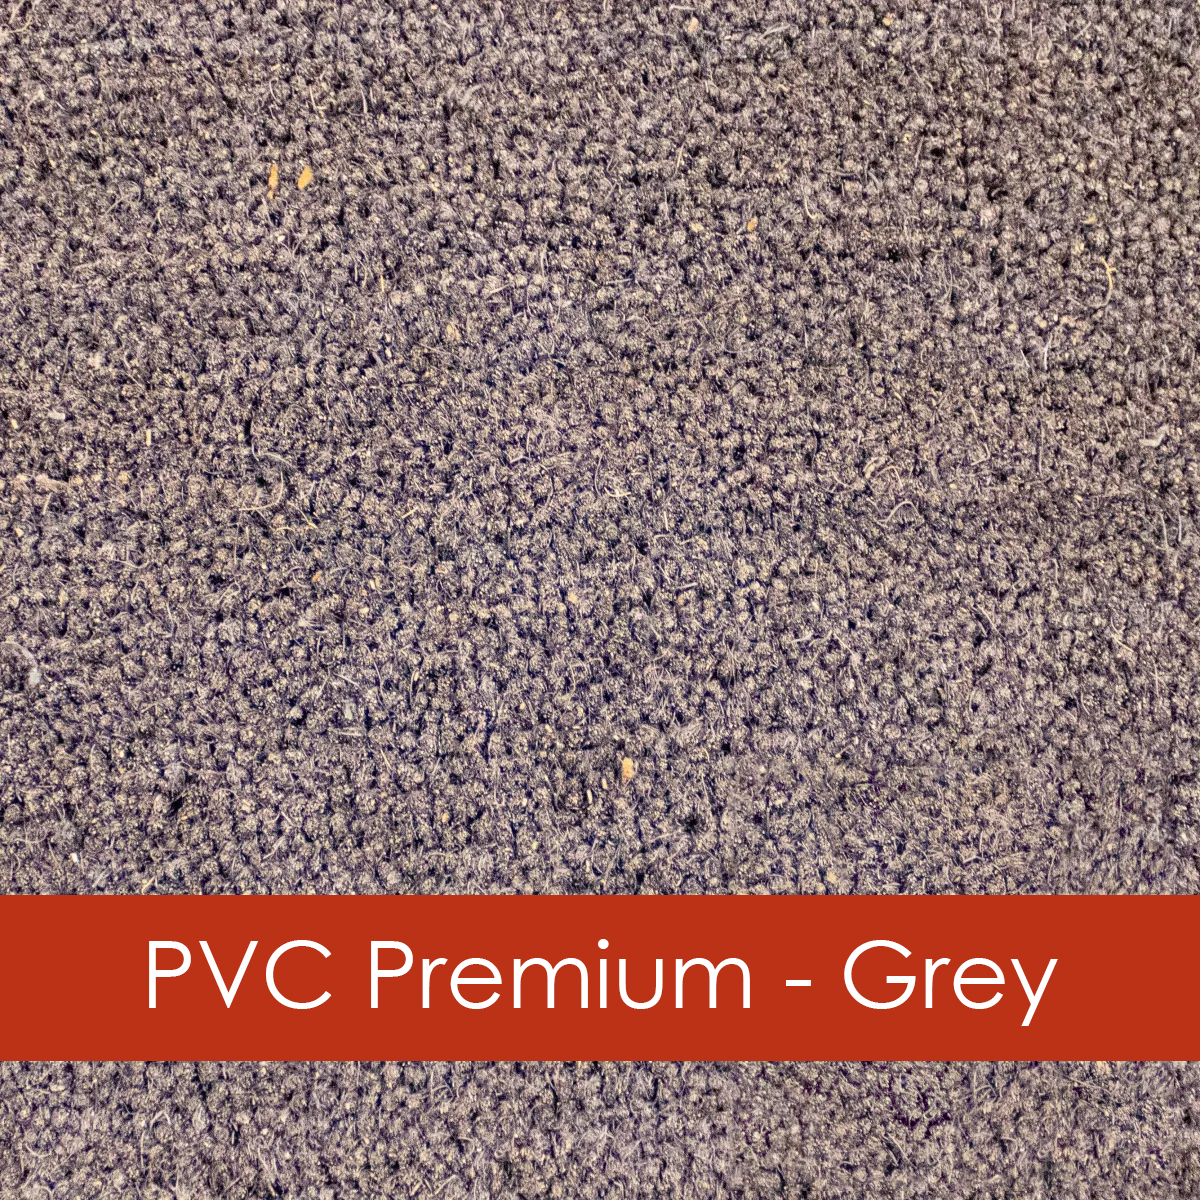 Grey PVC backed coir premium grade